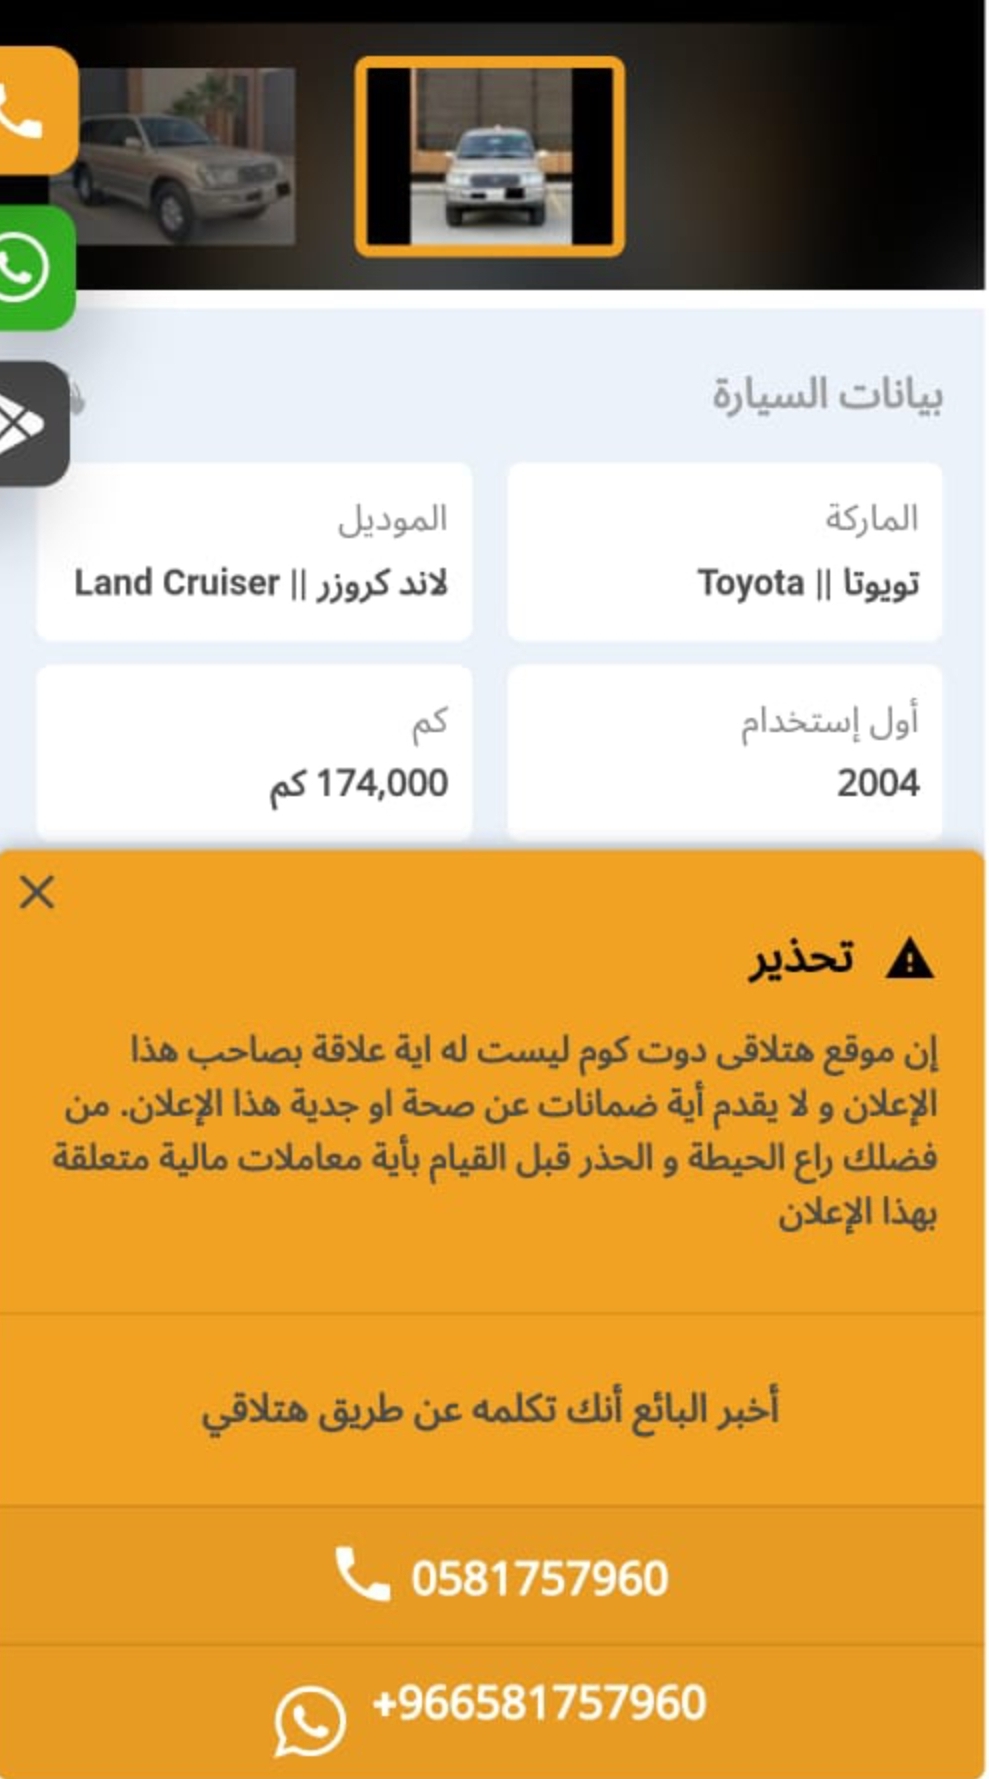 Screenshot ٢٠٢٣٠٥١٧ ١٩٠٠٥٩ WhatsApp - مدونة التقنية العربية